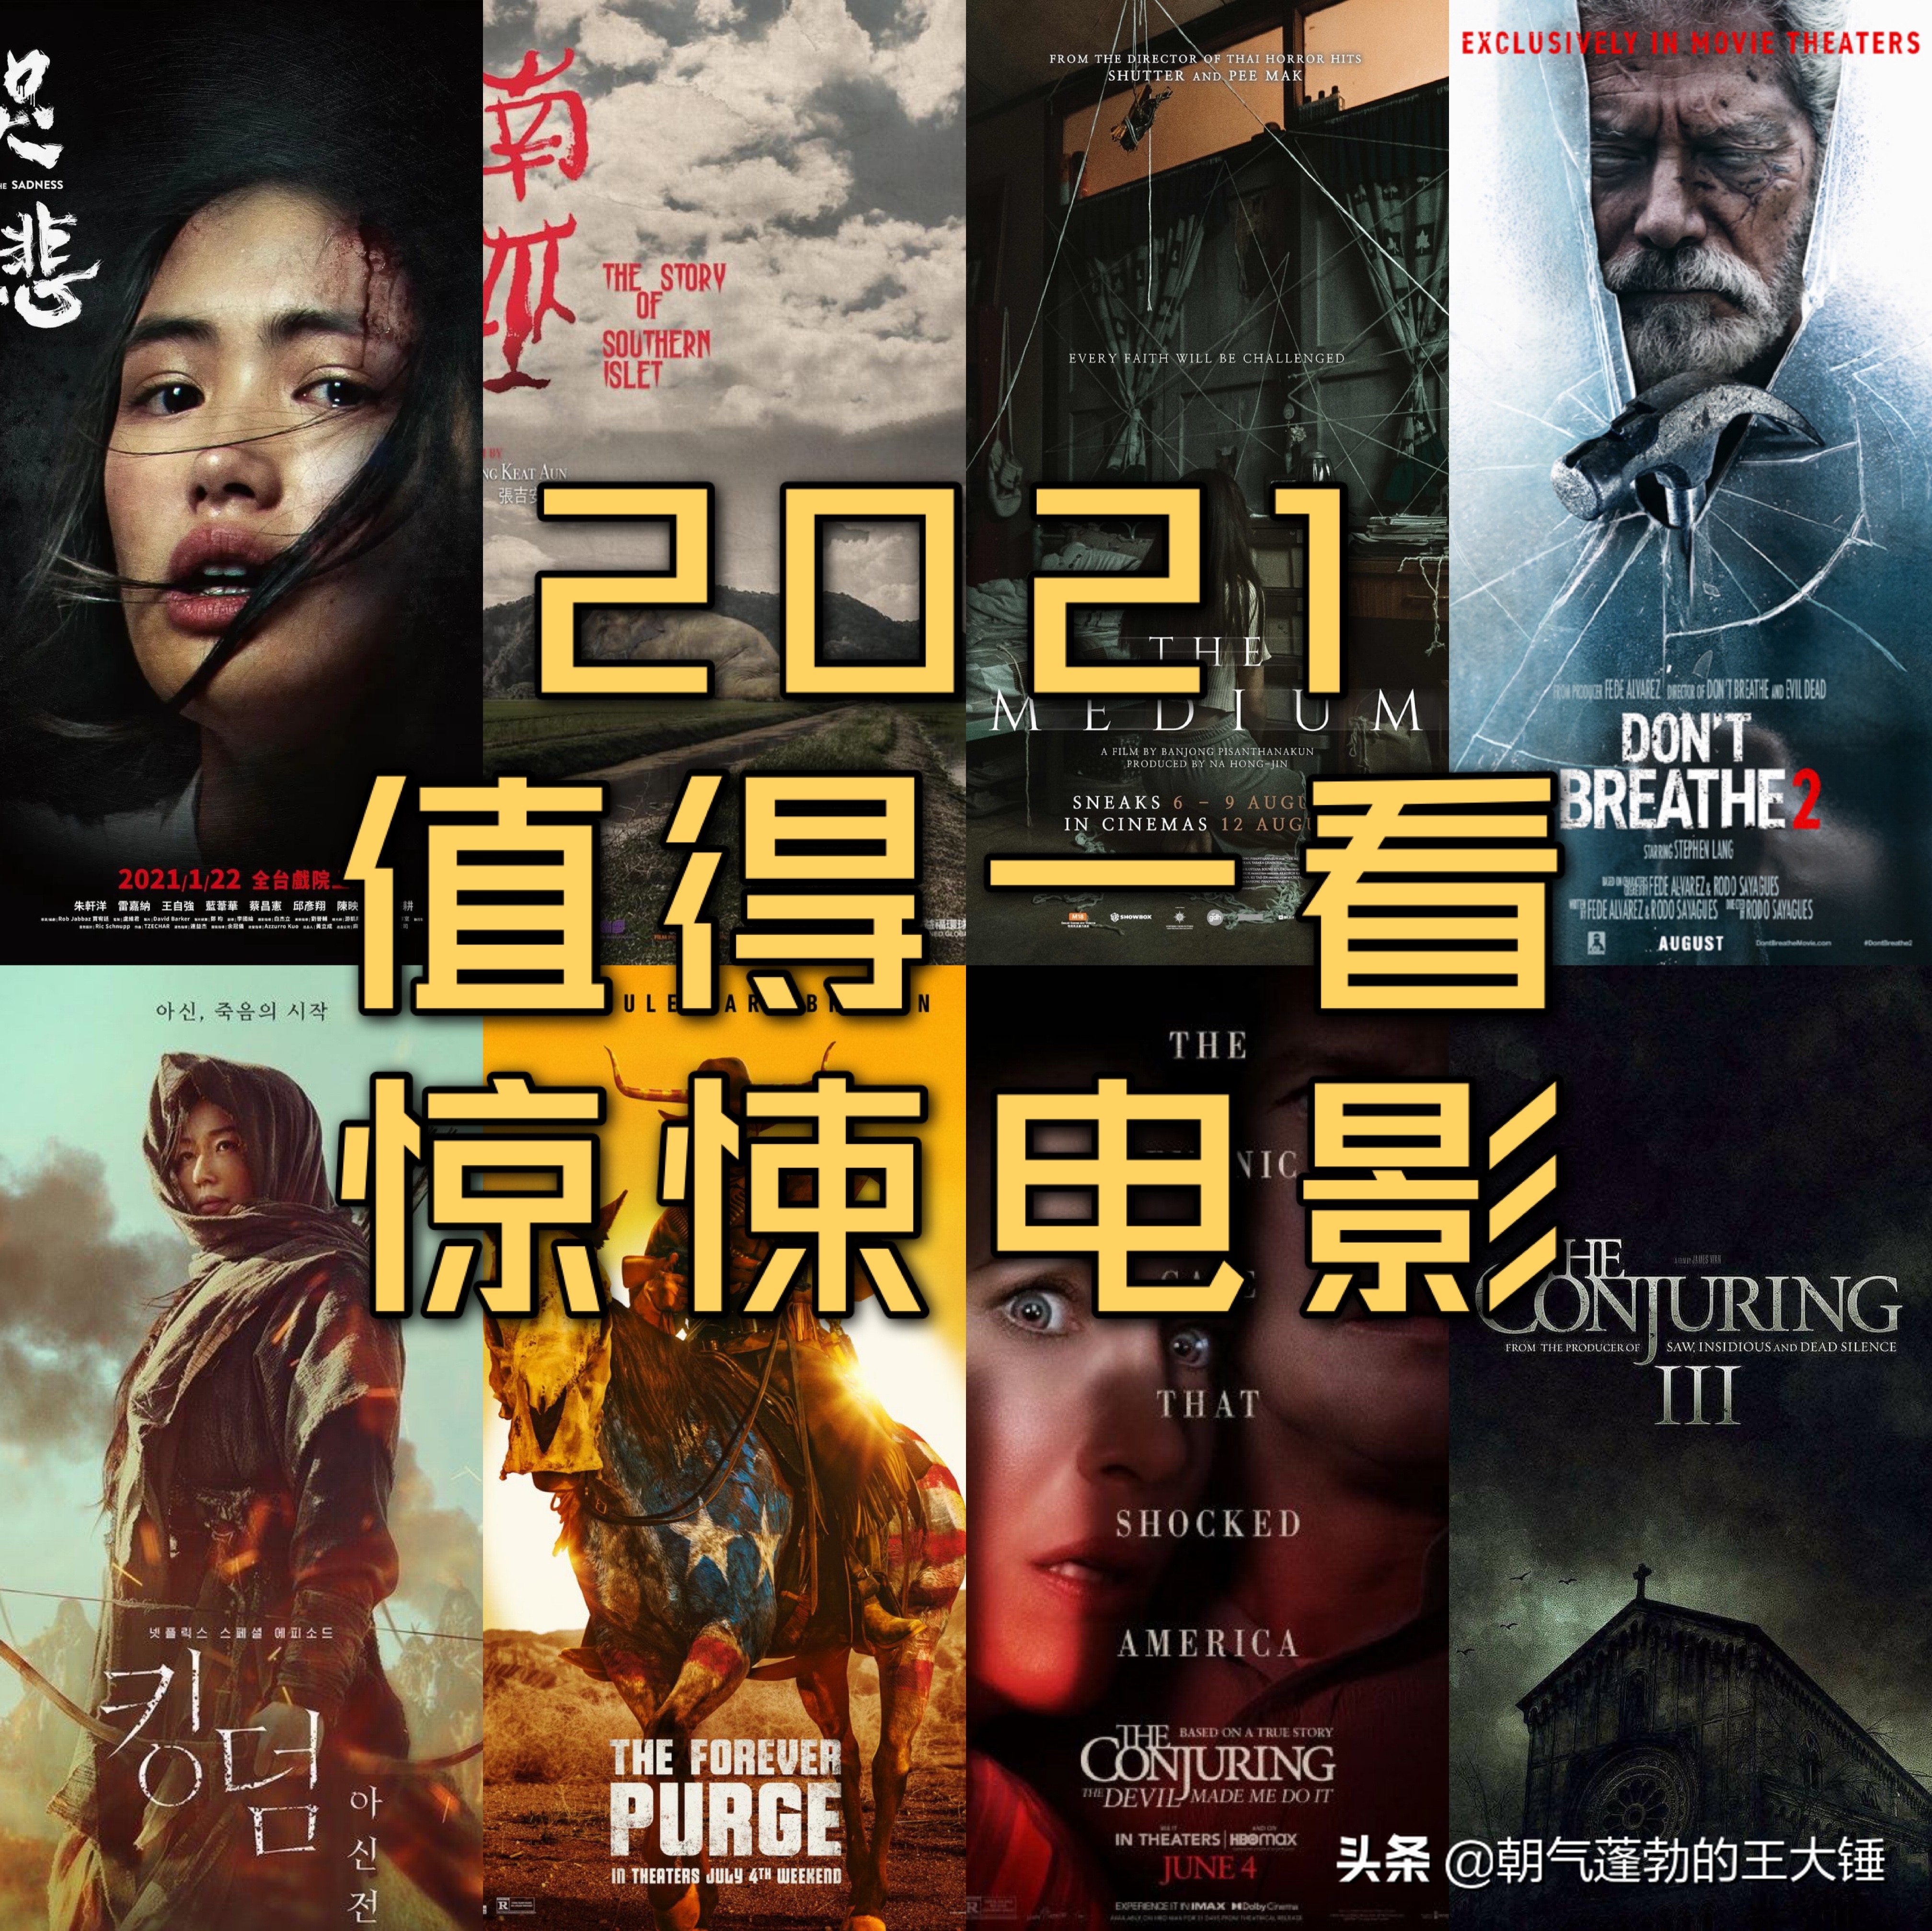 推荐十部2021值得一看的惊悚恐怖电影（已上映篇）点赞收藏哦